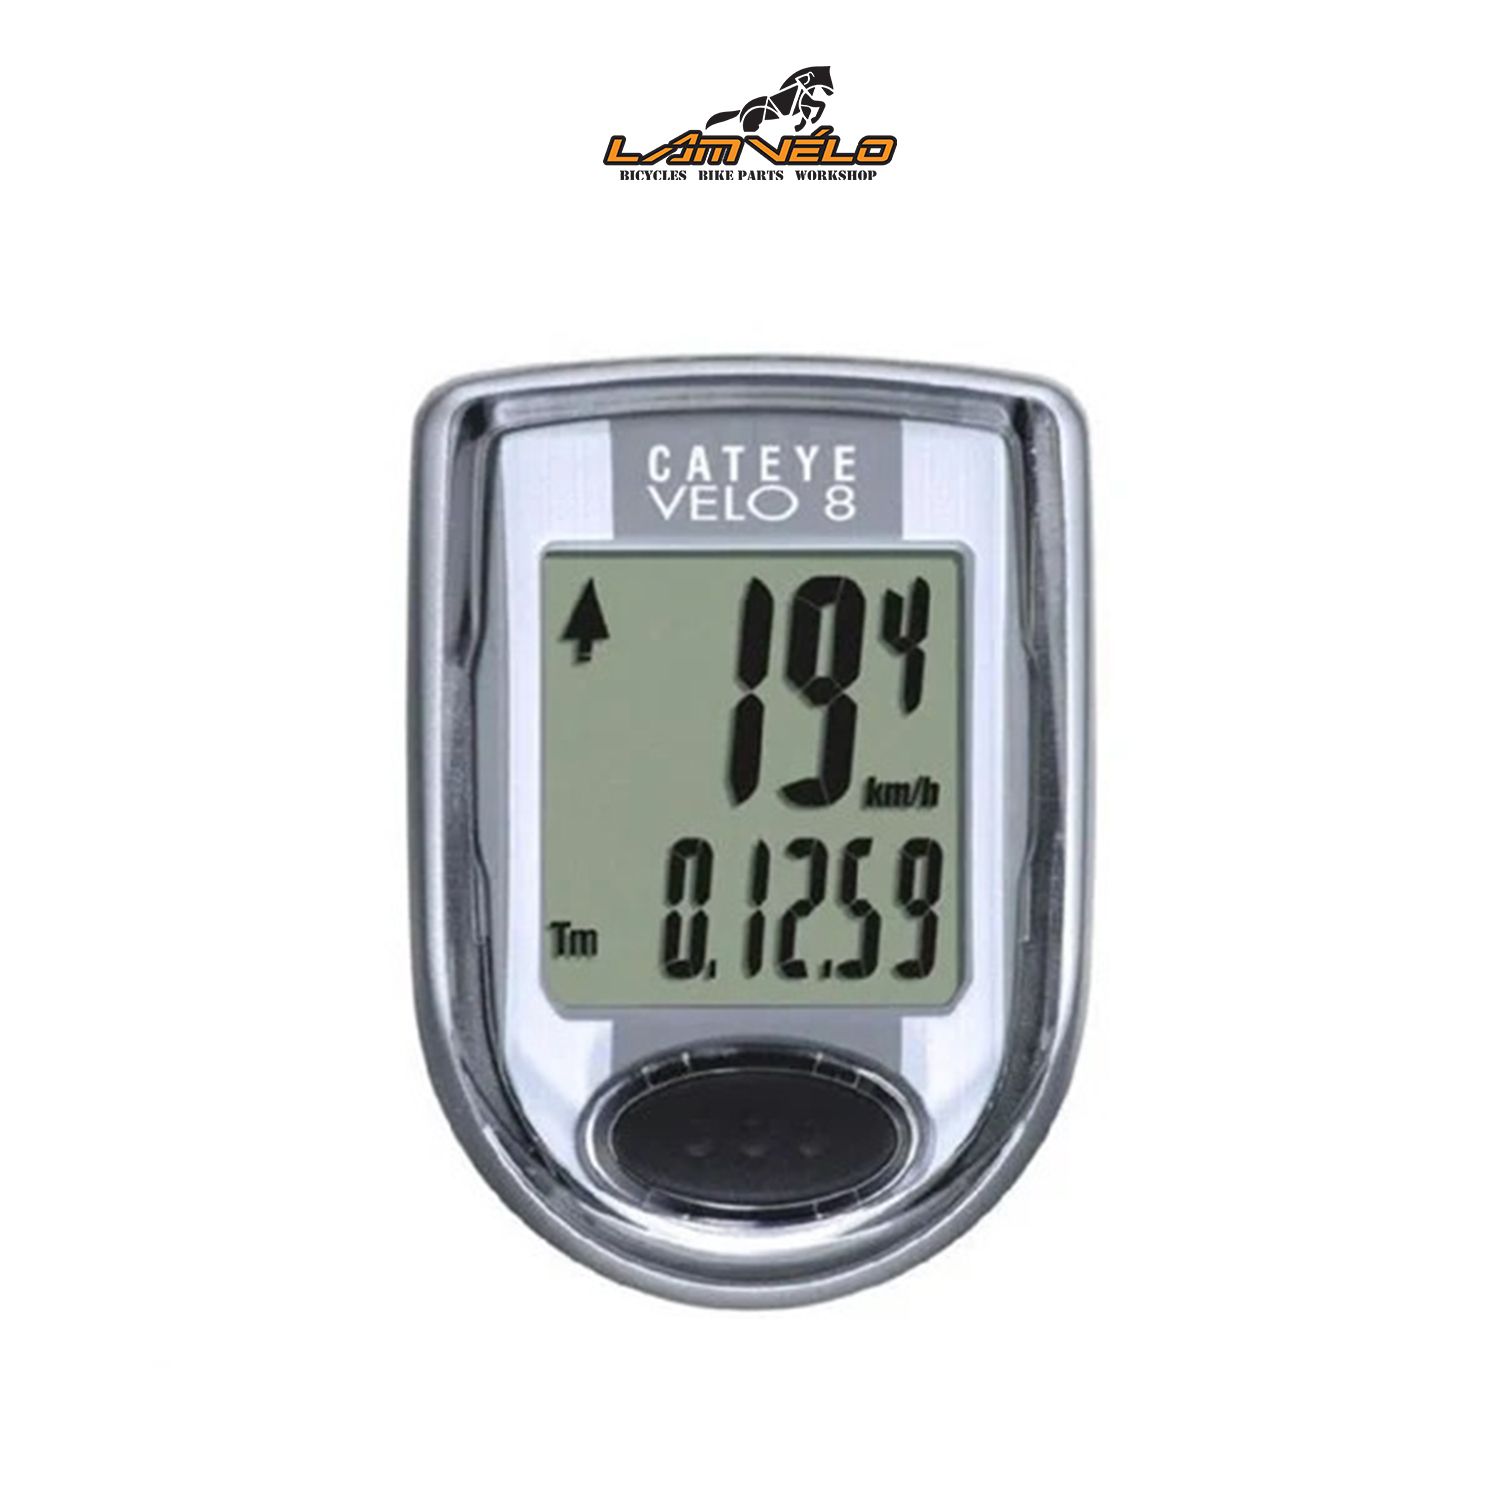  Đồng hồ đo tốc độ xe đạp/ Cateye Velo 8 